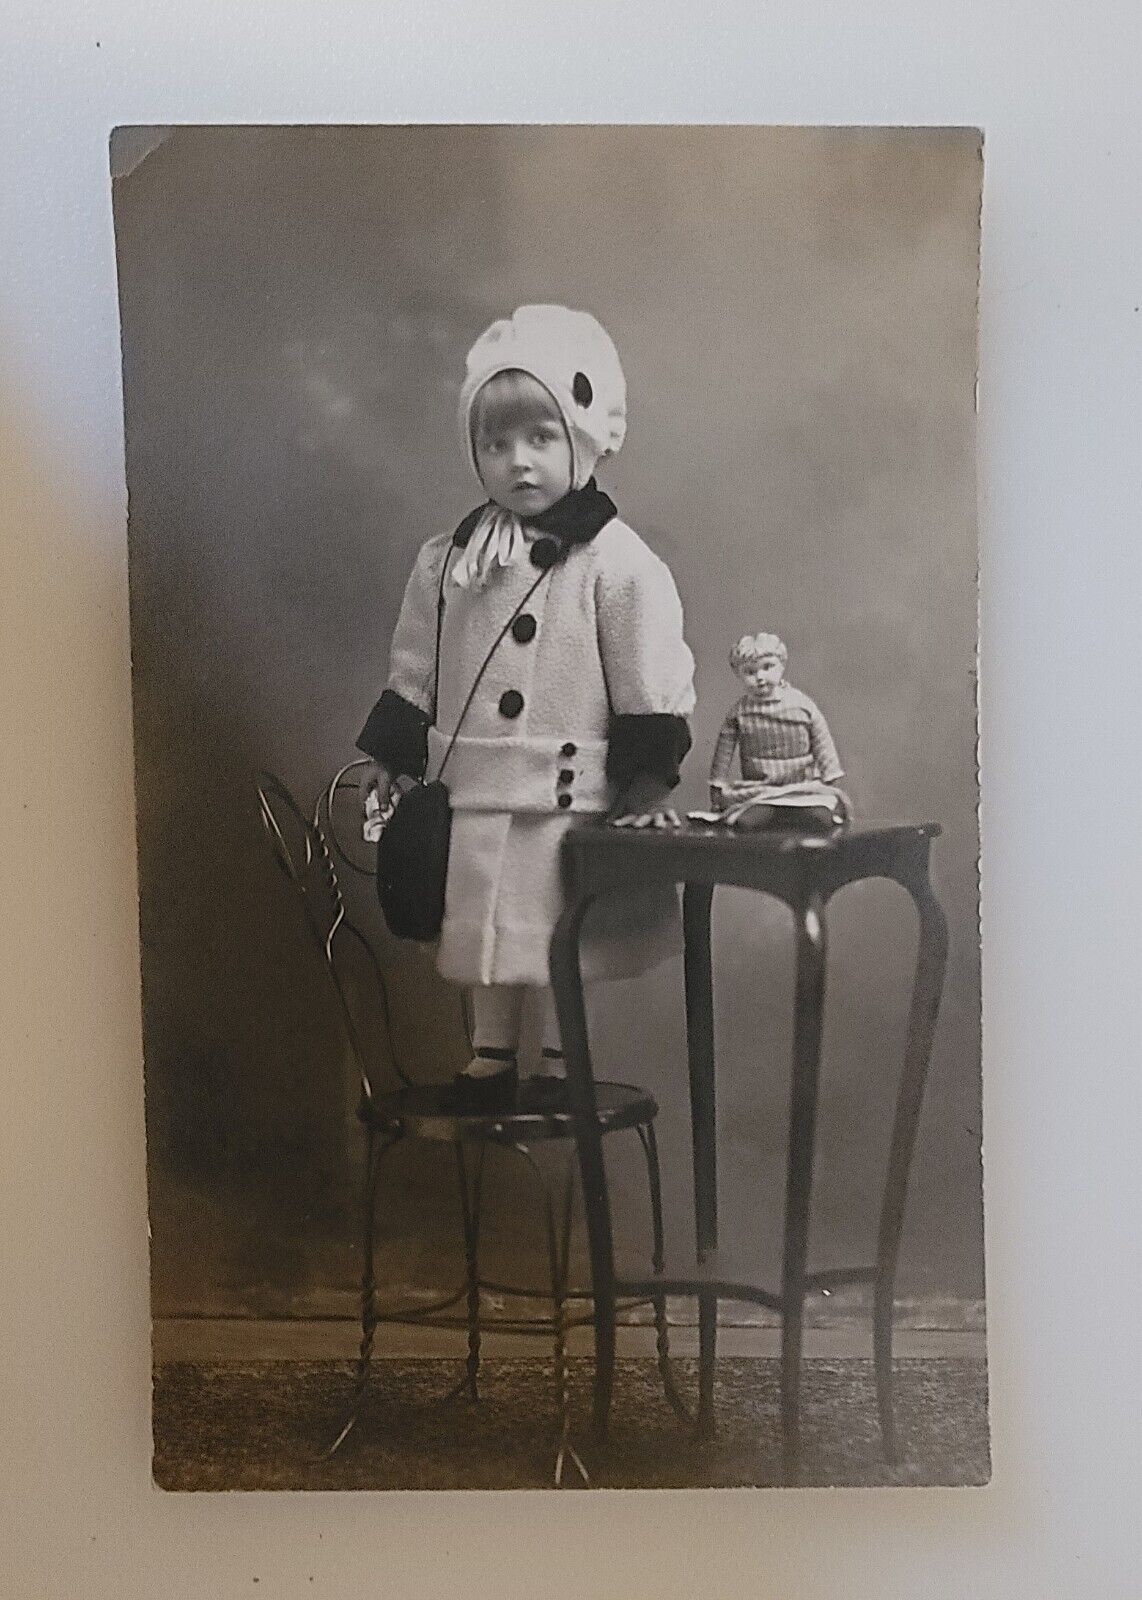  Little Girl Studio Portrait, Antique, Vintage Photograph Postcard